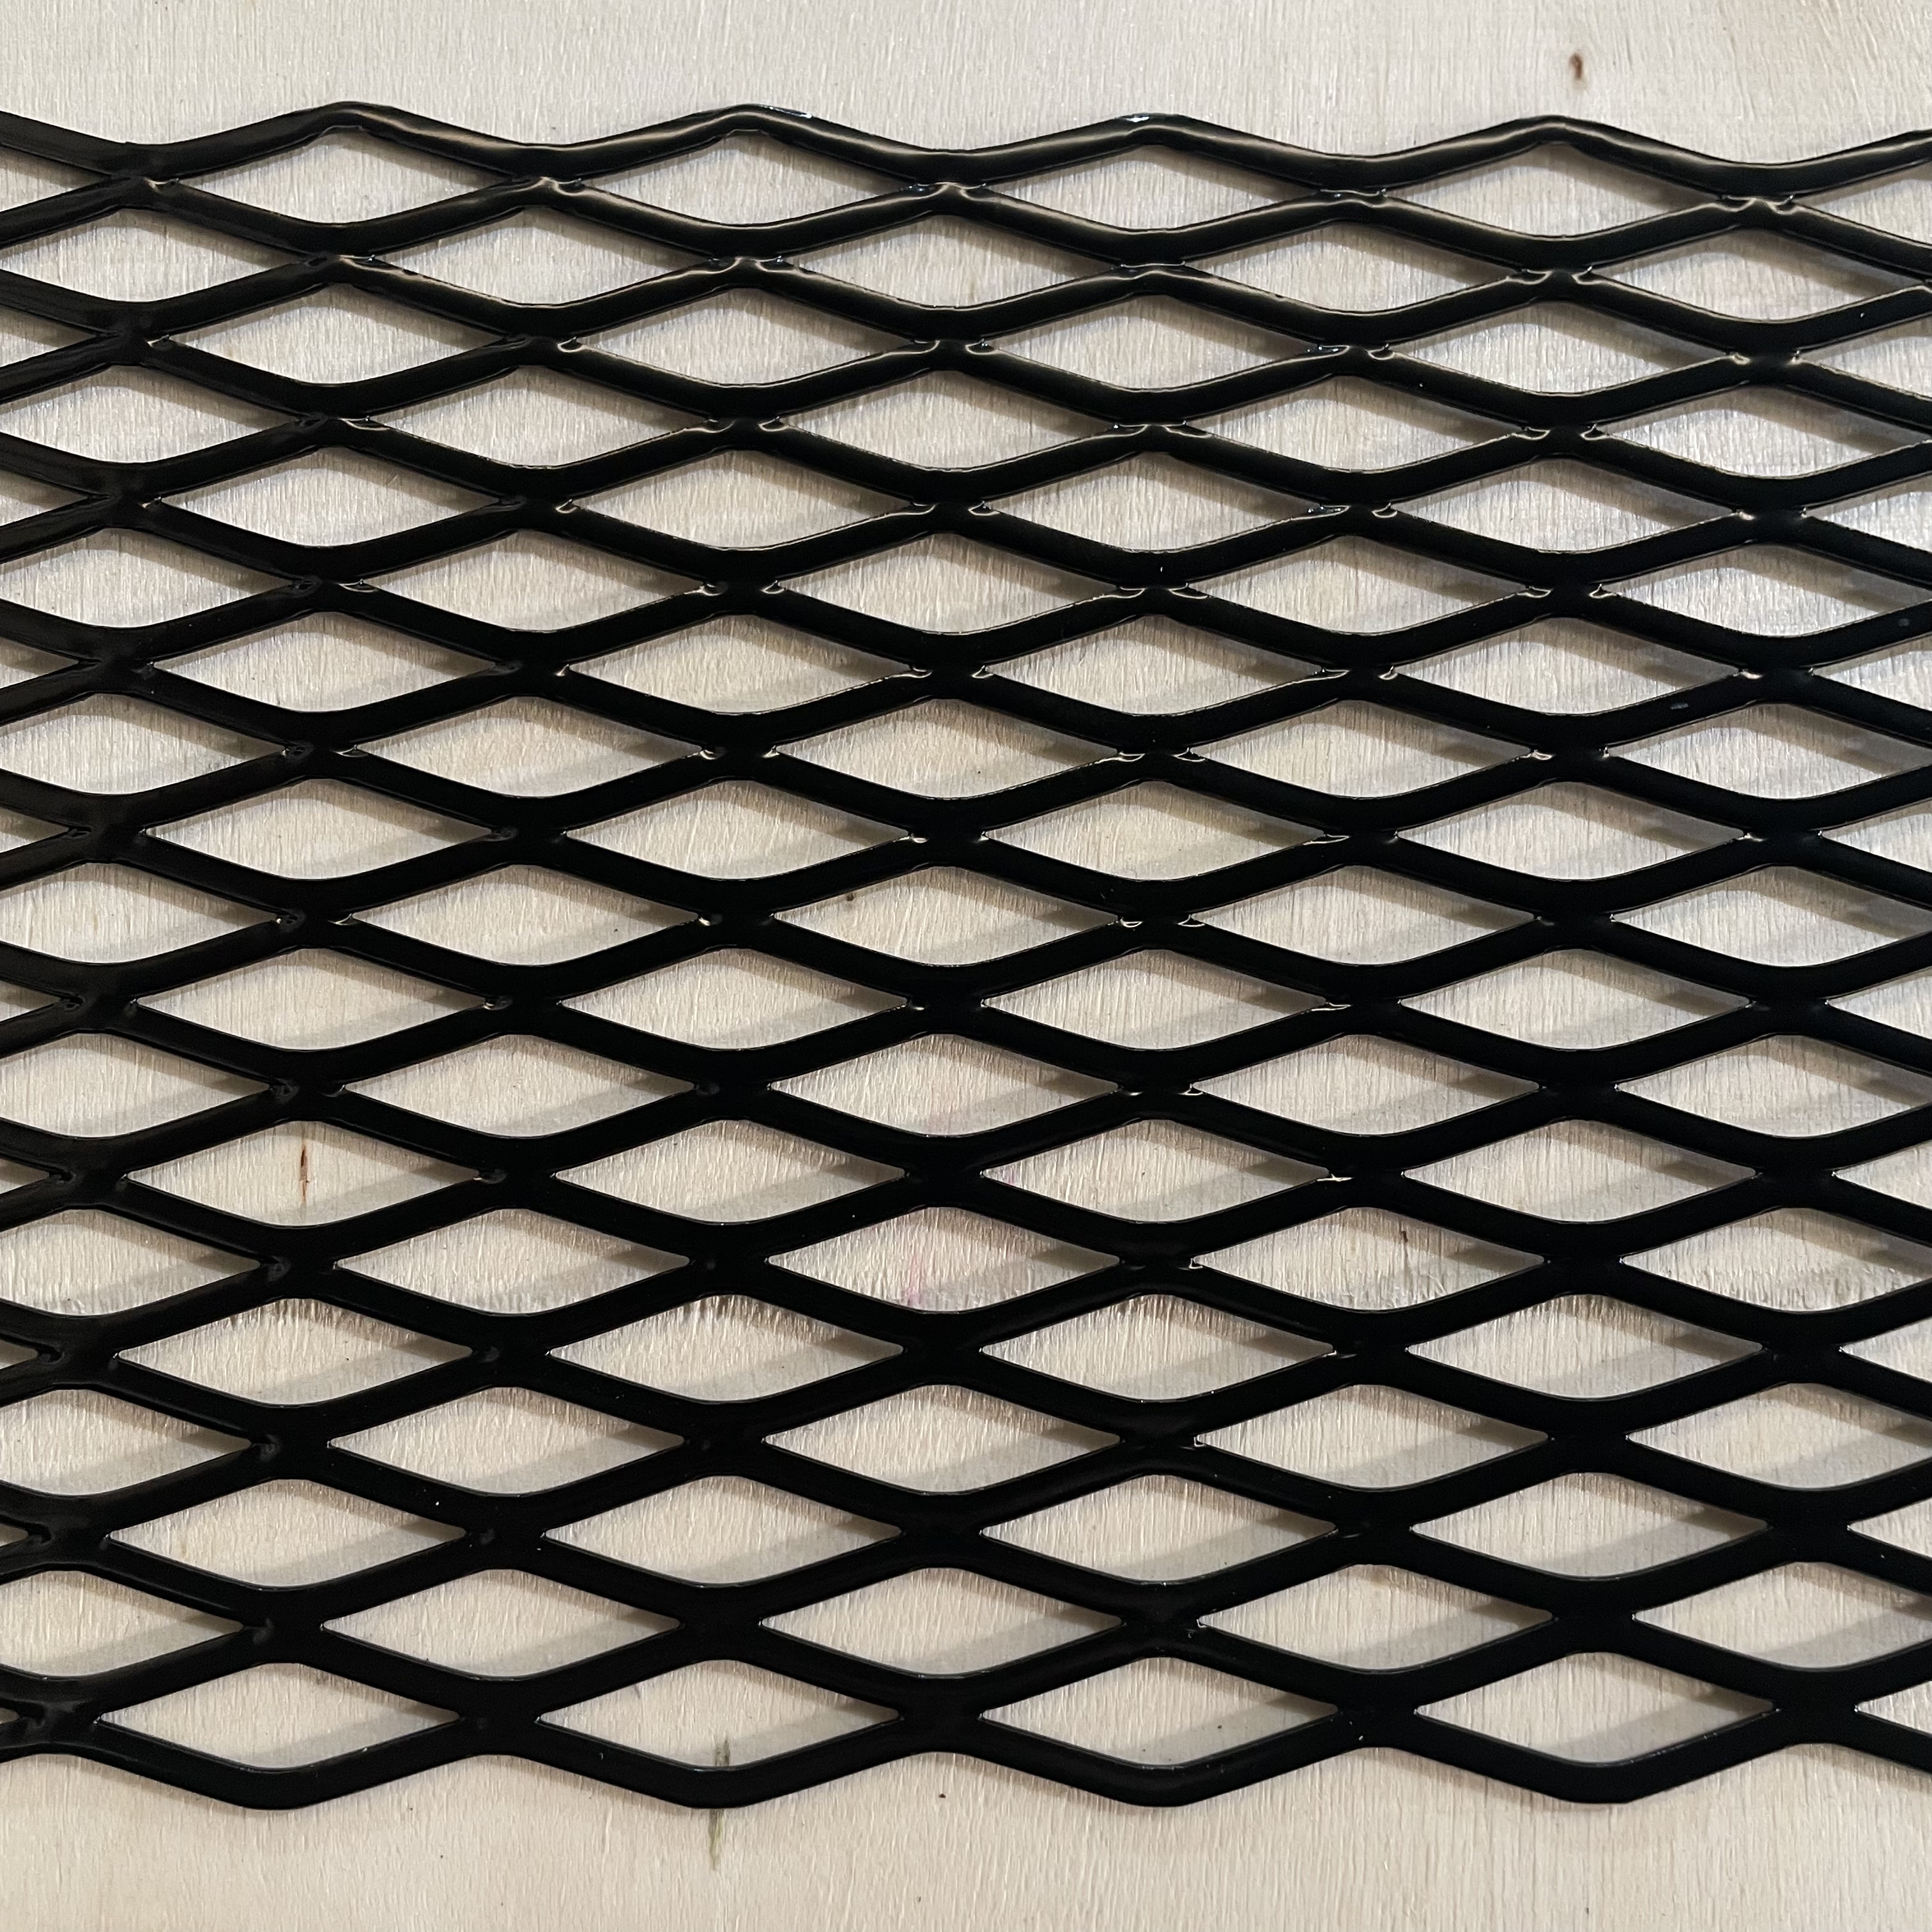 1/2-.050 aluminum solar panel mesh Featured Image